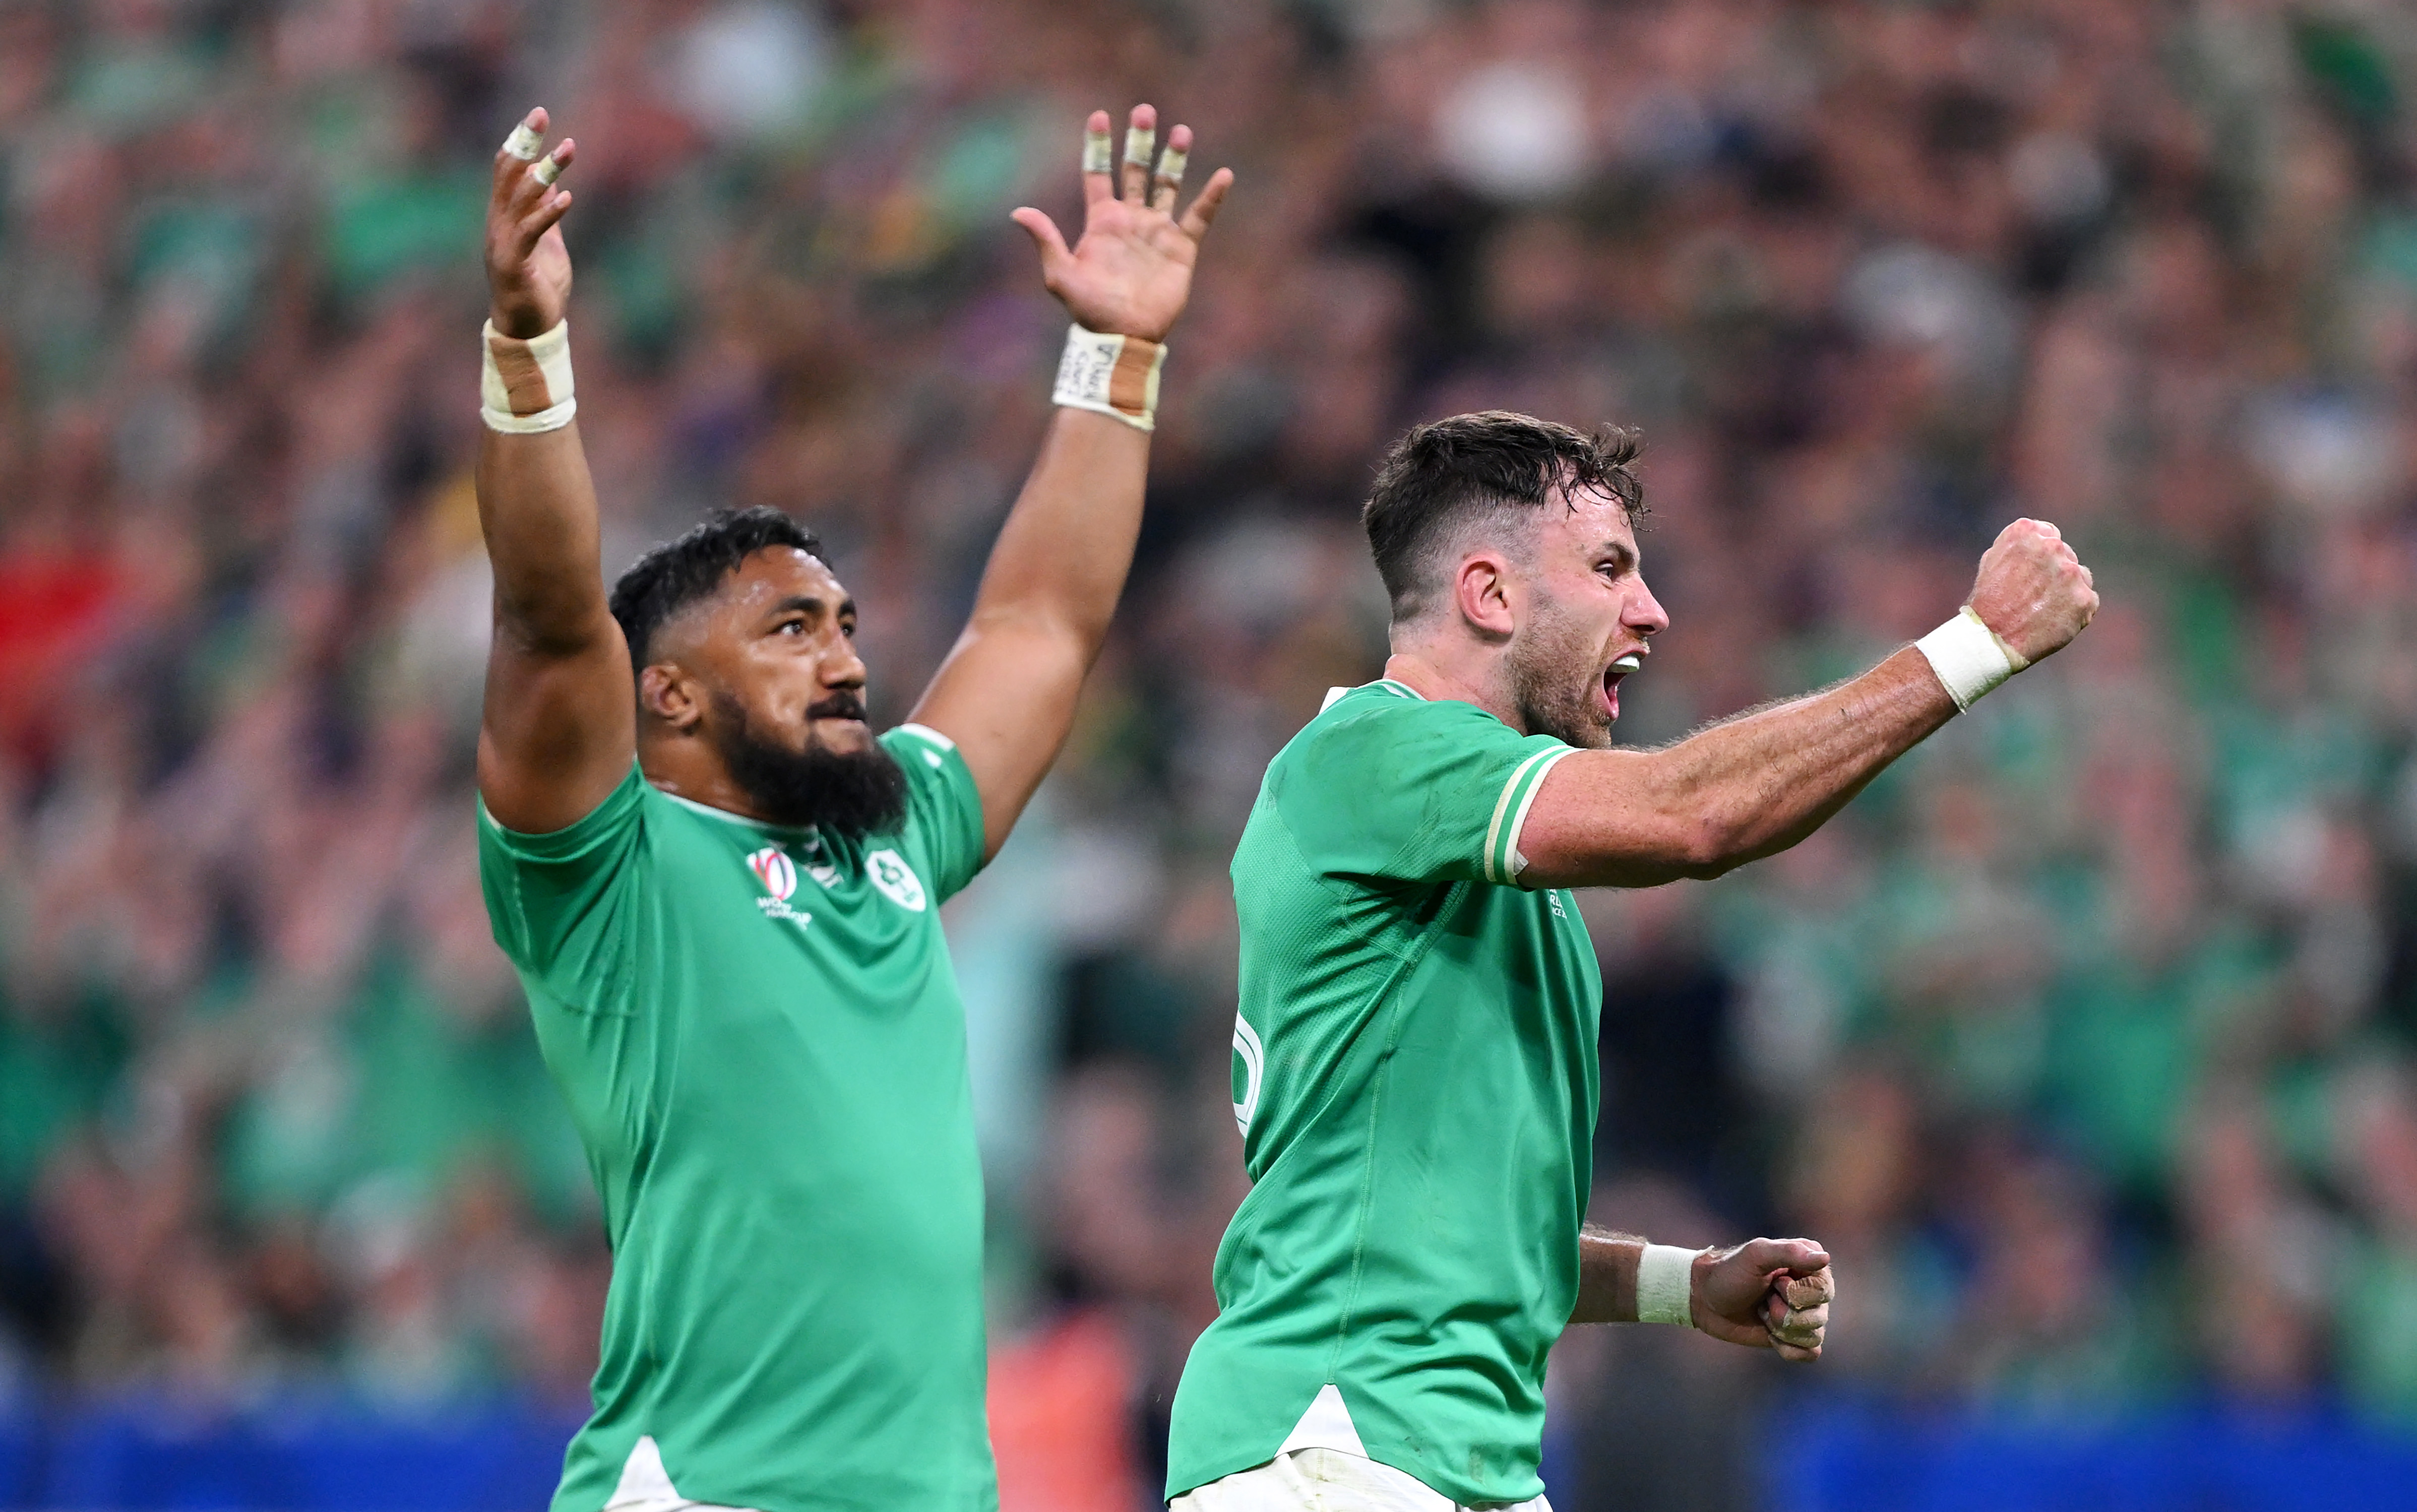 LIVE: Aussie ace helps Ireland sink world champs